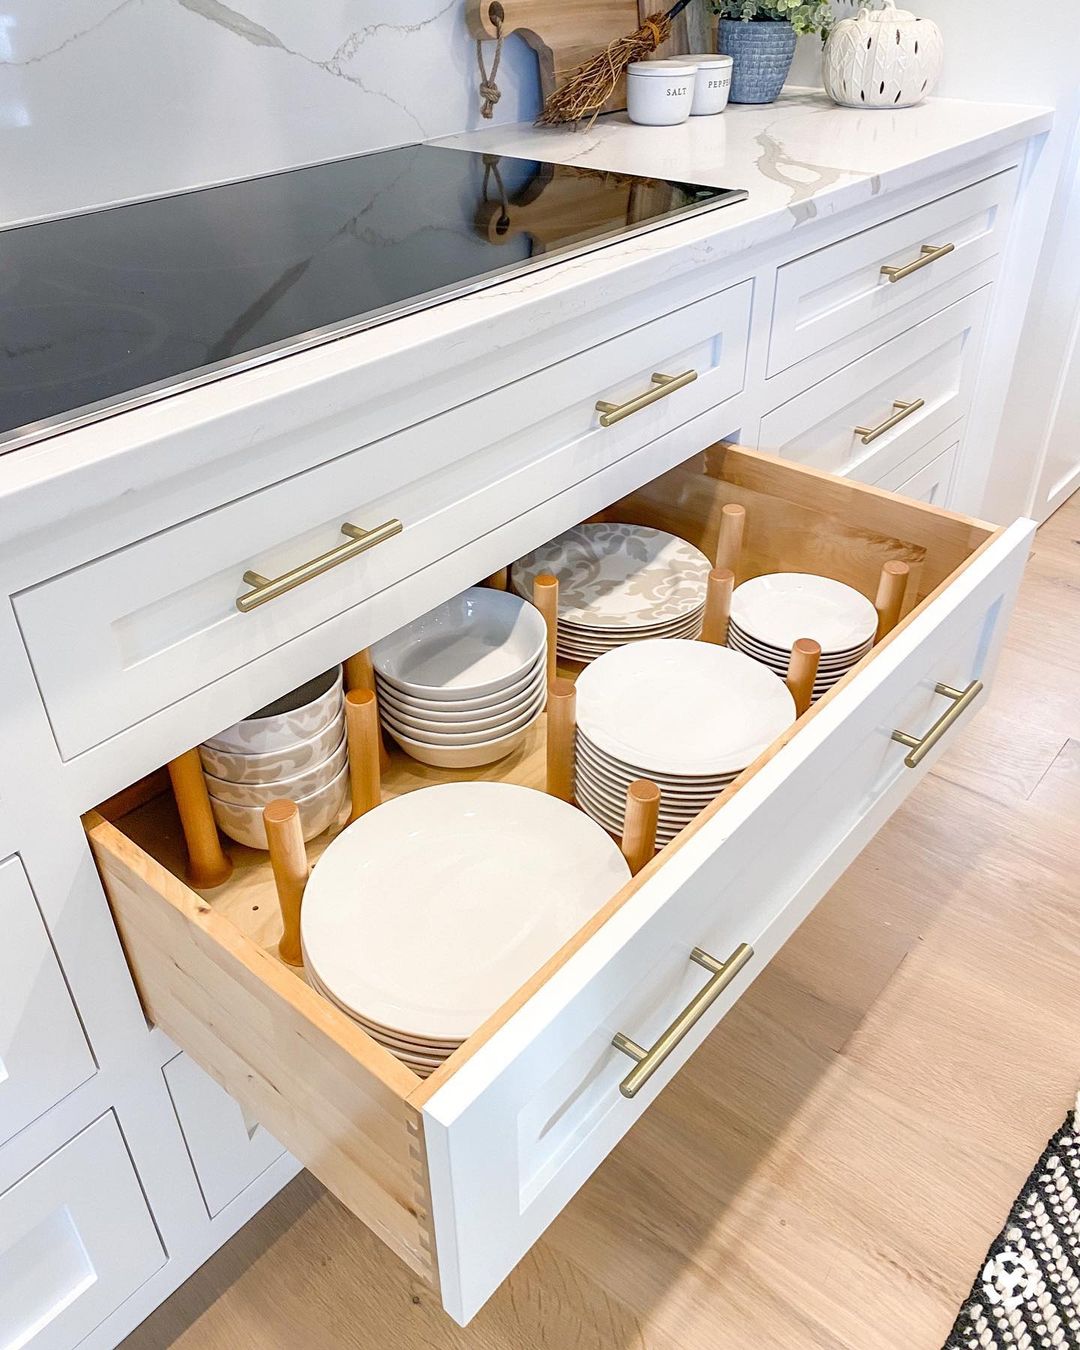 7 Kitchen Cabinets Design Ideas Make